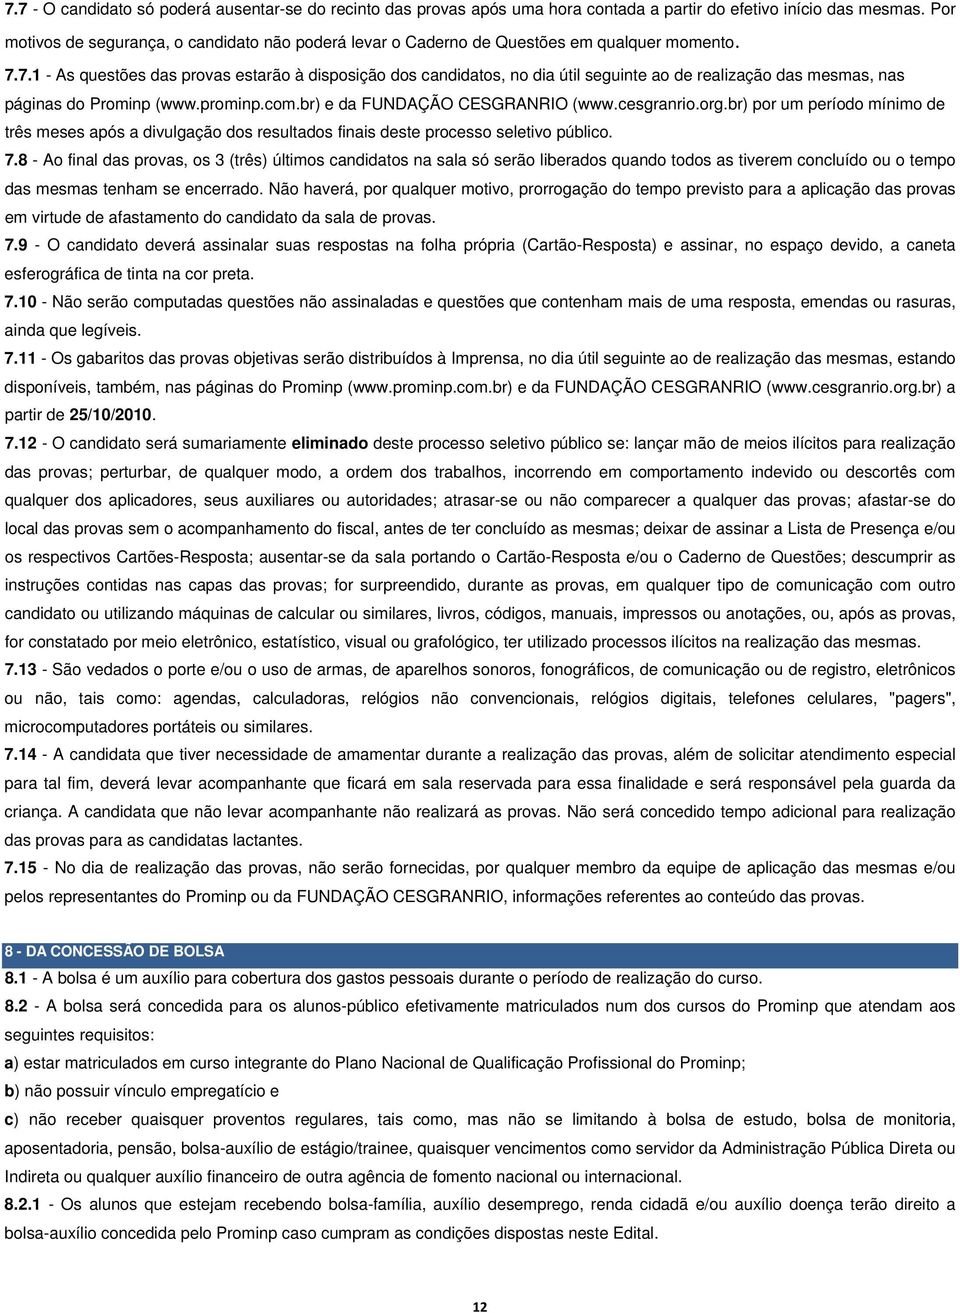 7.1 - As questões das provas estarão à disposição dos candidatos, no dia útil seguinte ao de realização das mesmas, nas páginas do Prominp (www.prominp.com.br) e da FUNDAÇÃO CESGRANRIO (www.